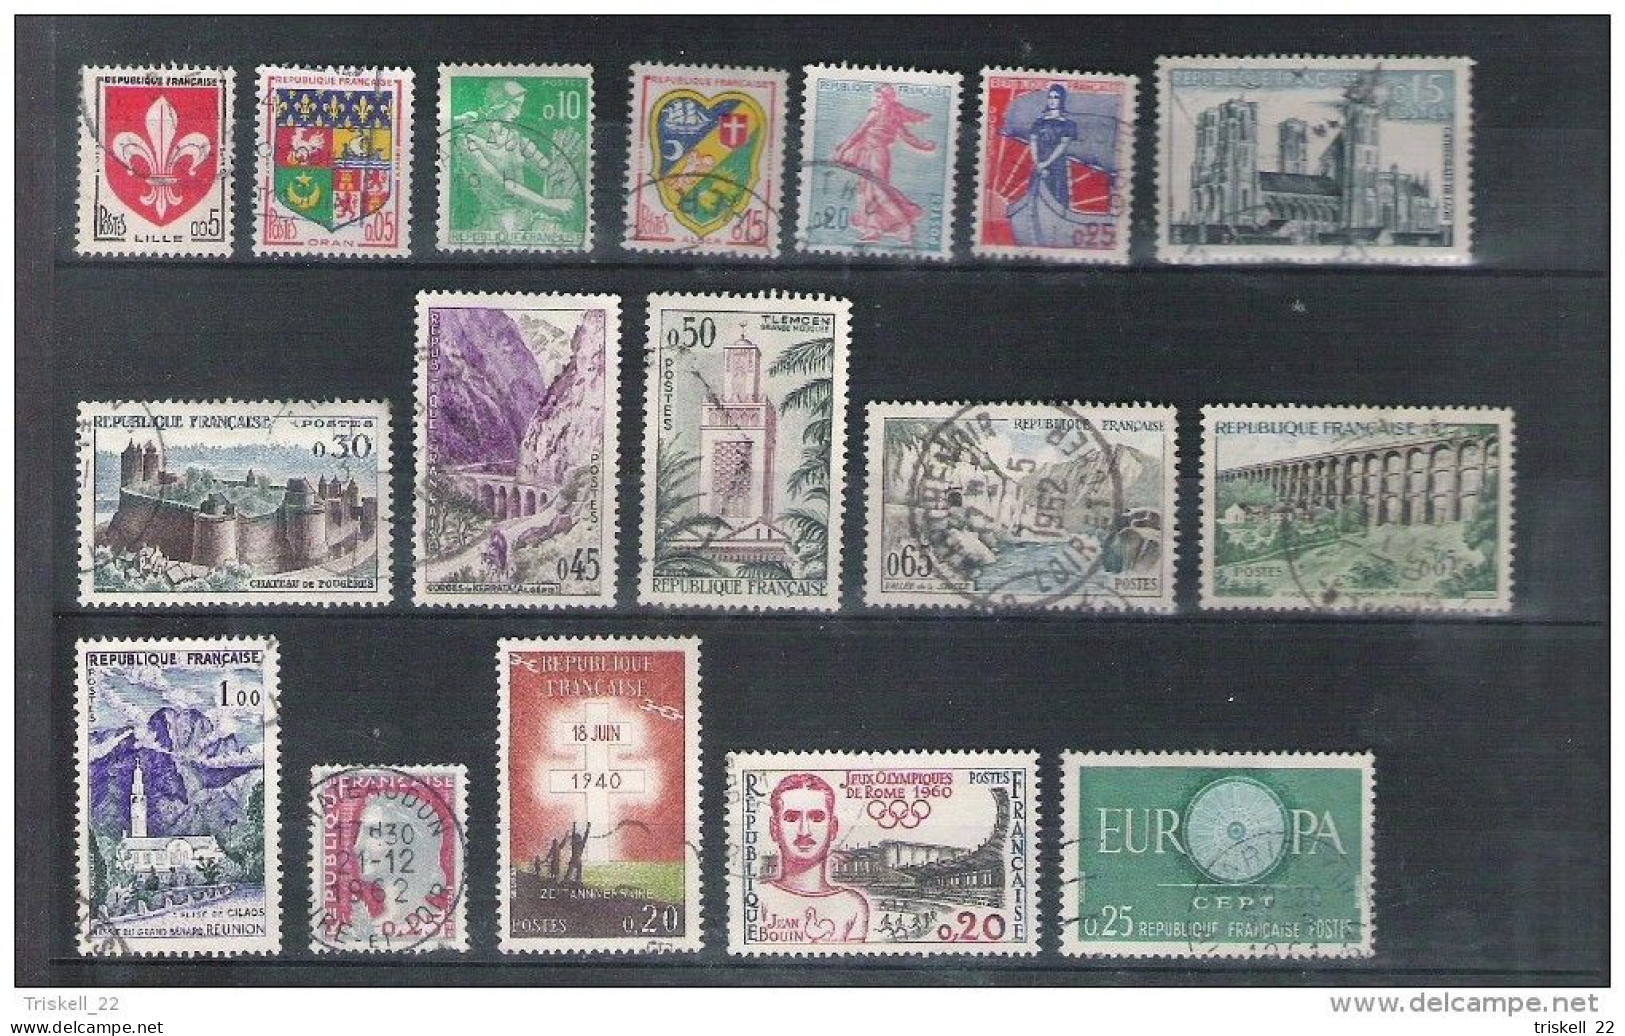 Lot timbres oblitérés - 1946-62 : qté 144 entre n° 759 & n° 1360 (voir détail dans descriptif) cote env. 52€